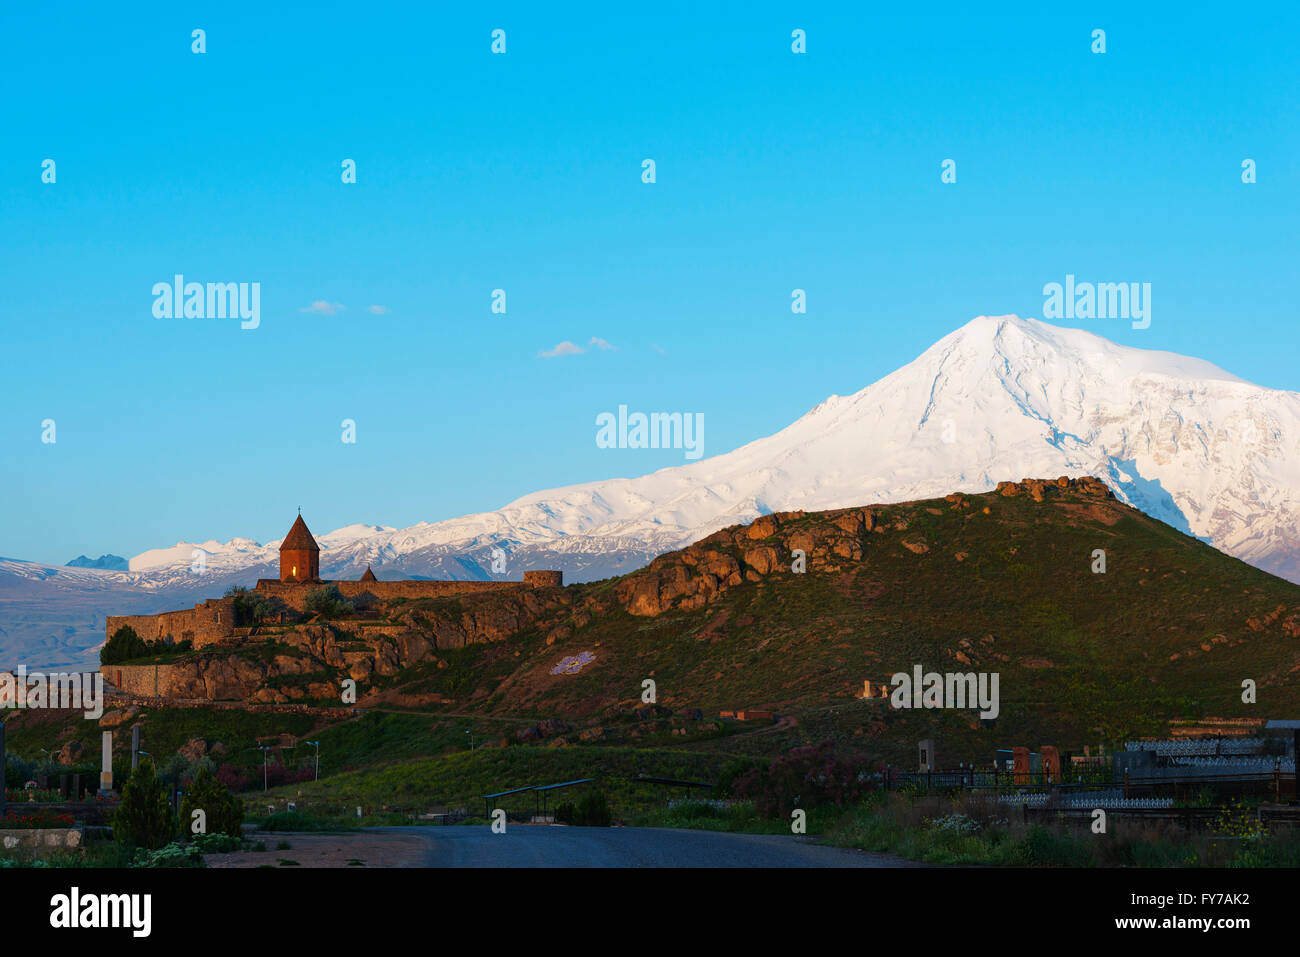 Eurasia, regione del Caucaso, Armenia, Khor Virap monastero, il monte Ararat (5137m), la montagna più alta in Turchia fotografata da Armen Foto Stock